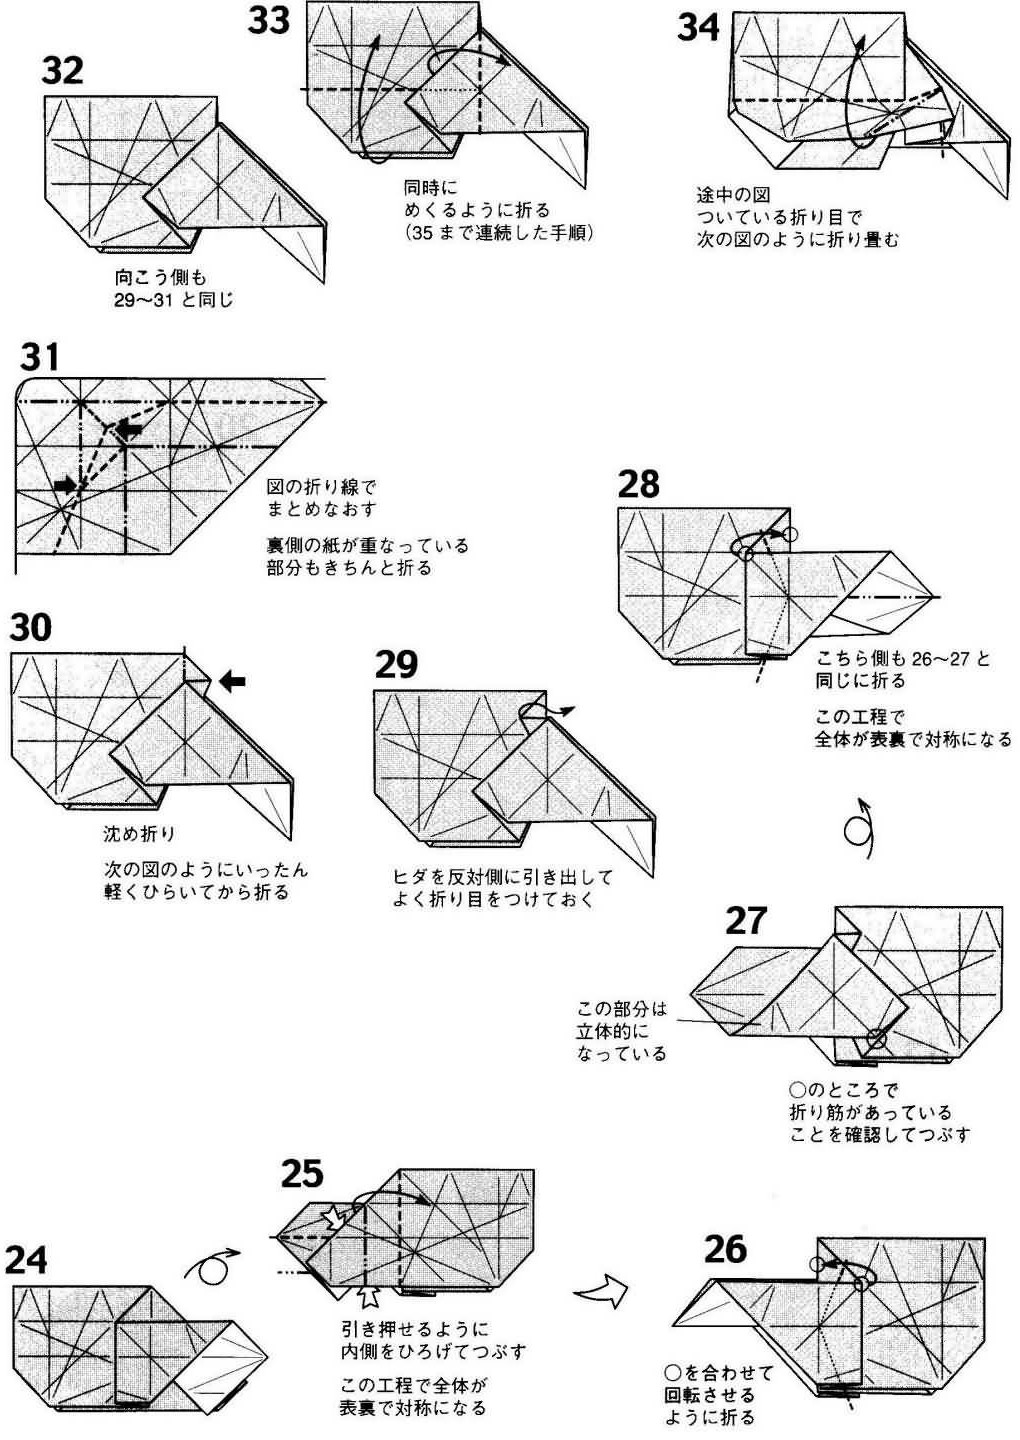 纸艺手工折纸艺术，小松英夫犬狗手工折纸图纸教程